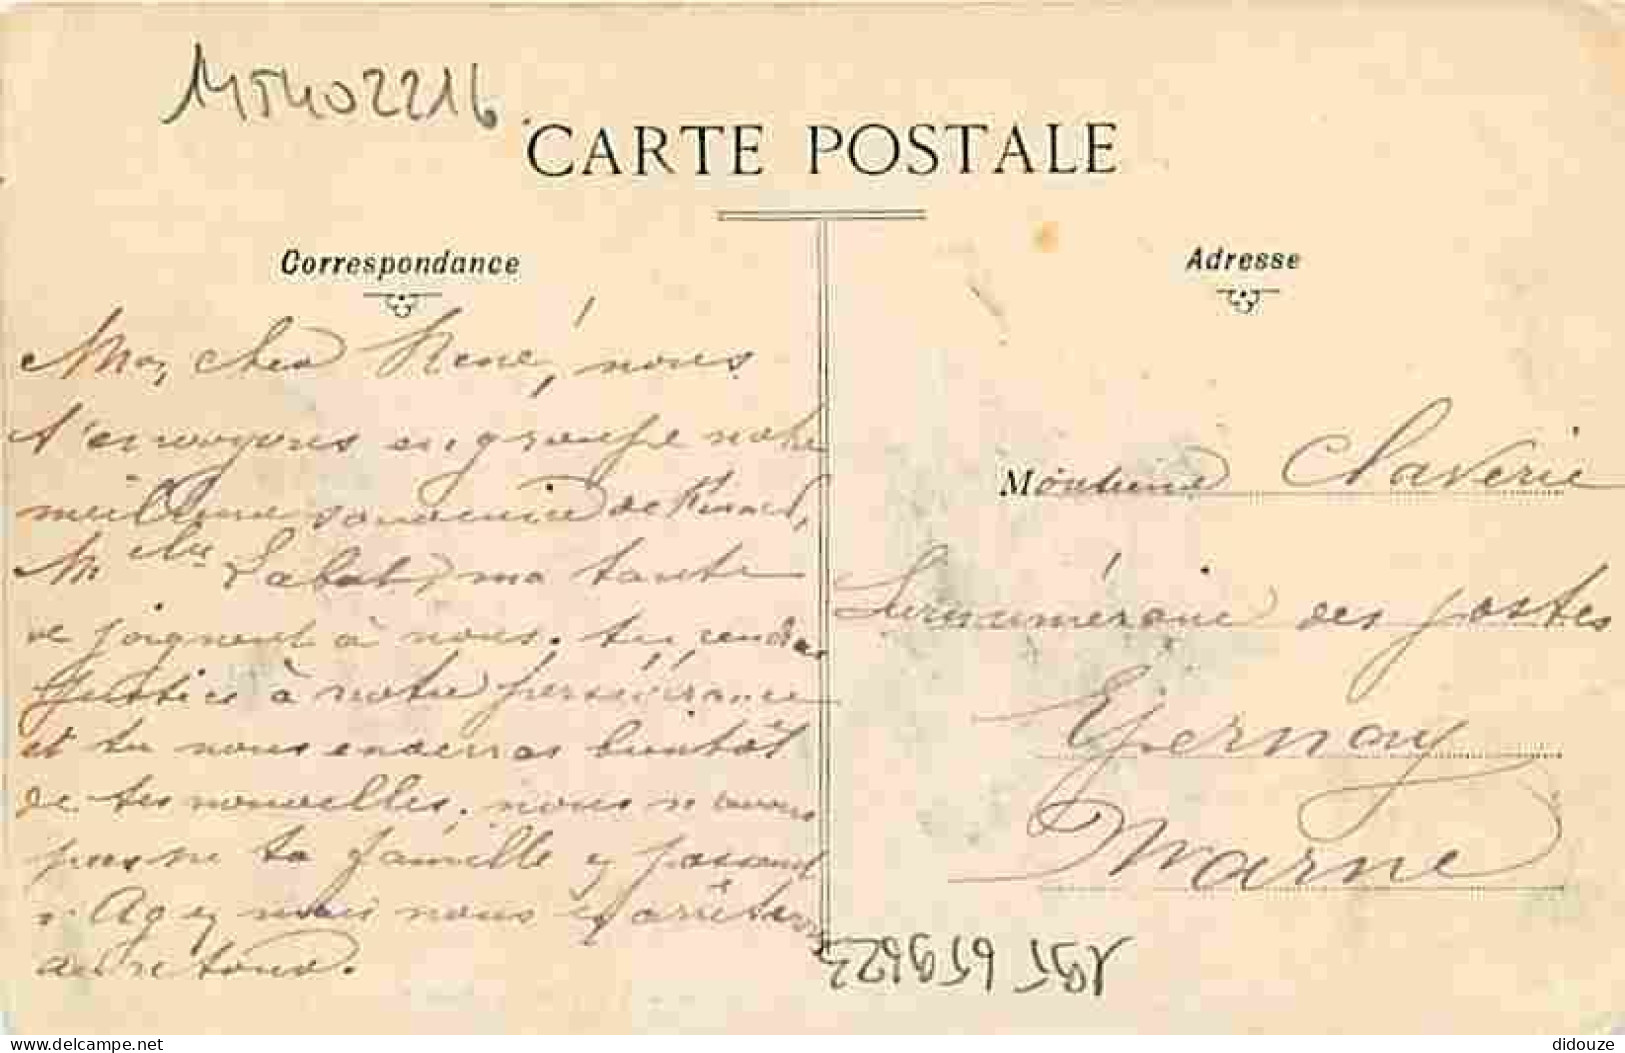 47 - Fumel - Le Château L'Ecole Laique Et L'Eglise - Oblitération Ronde De 1908 - Correspondance - CPA - Voir Scans Rect - Fumel